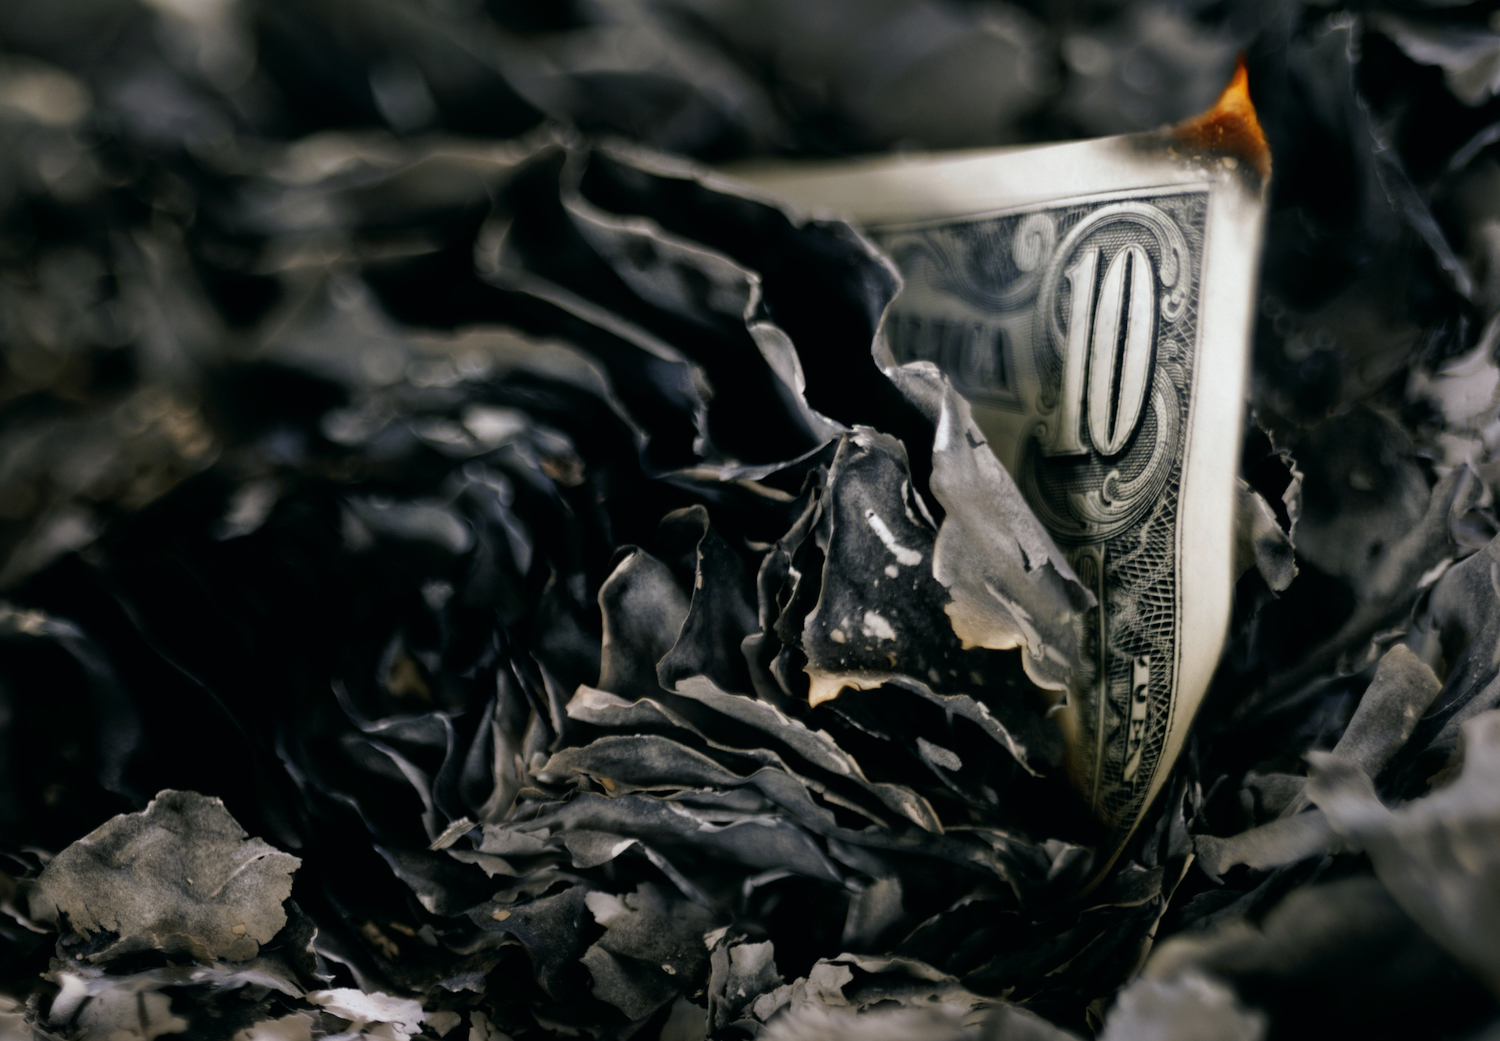 Burnt US $10 bills, close up